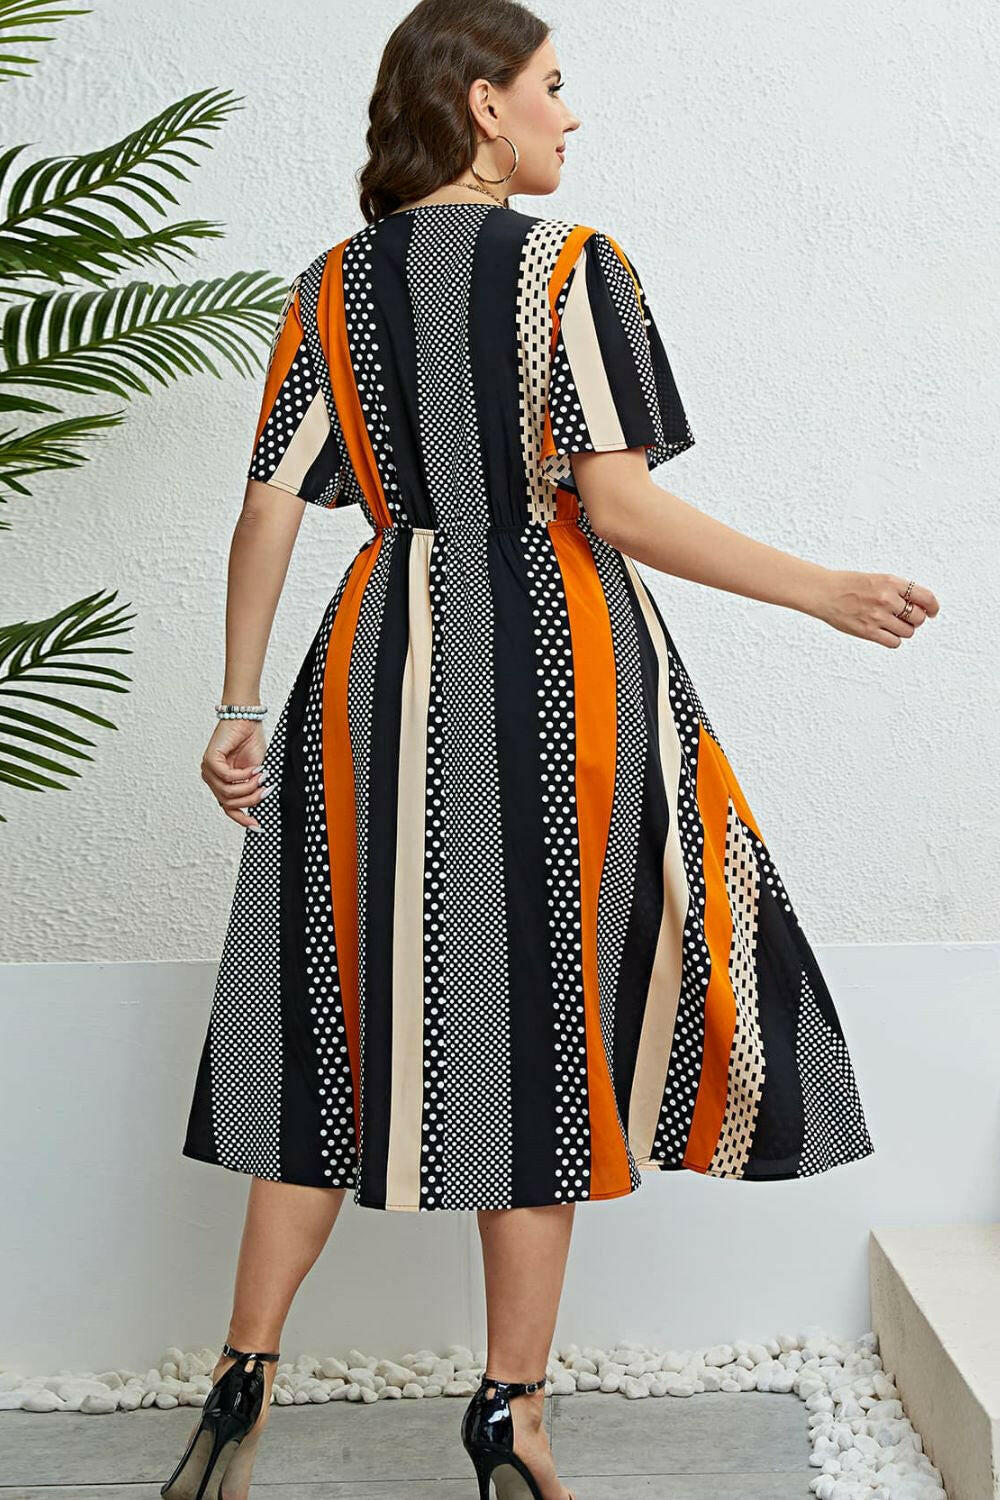 Mixed Print Striped Flutter Sleeve Dress.